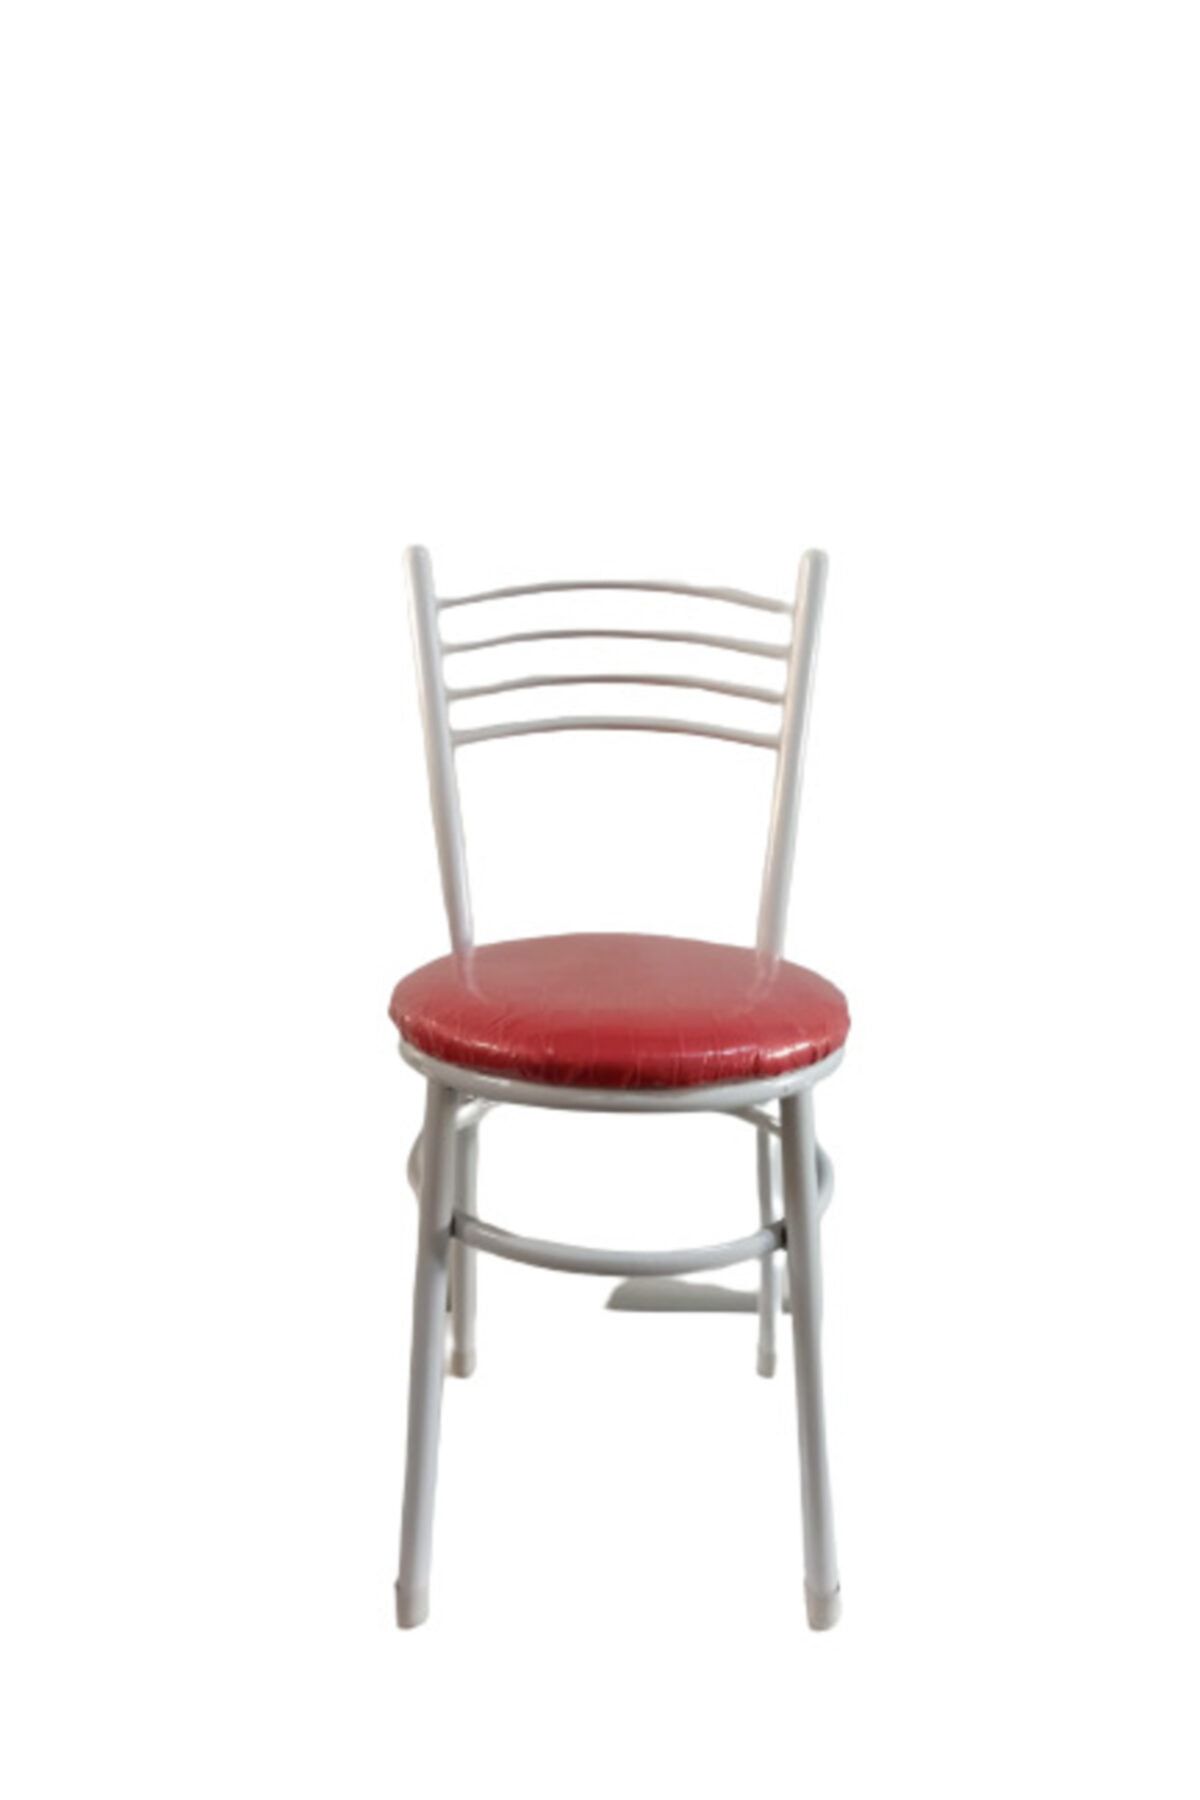 yılmaz masacılık Tatlı 2 Adet Kırmızı Mutfak Bahçe Sandalyesi